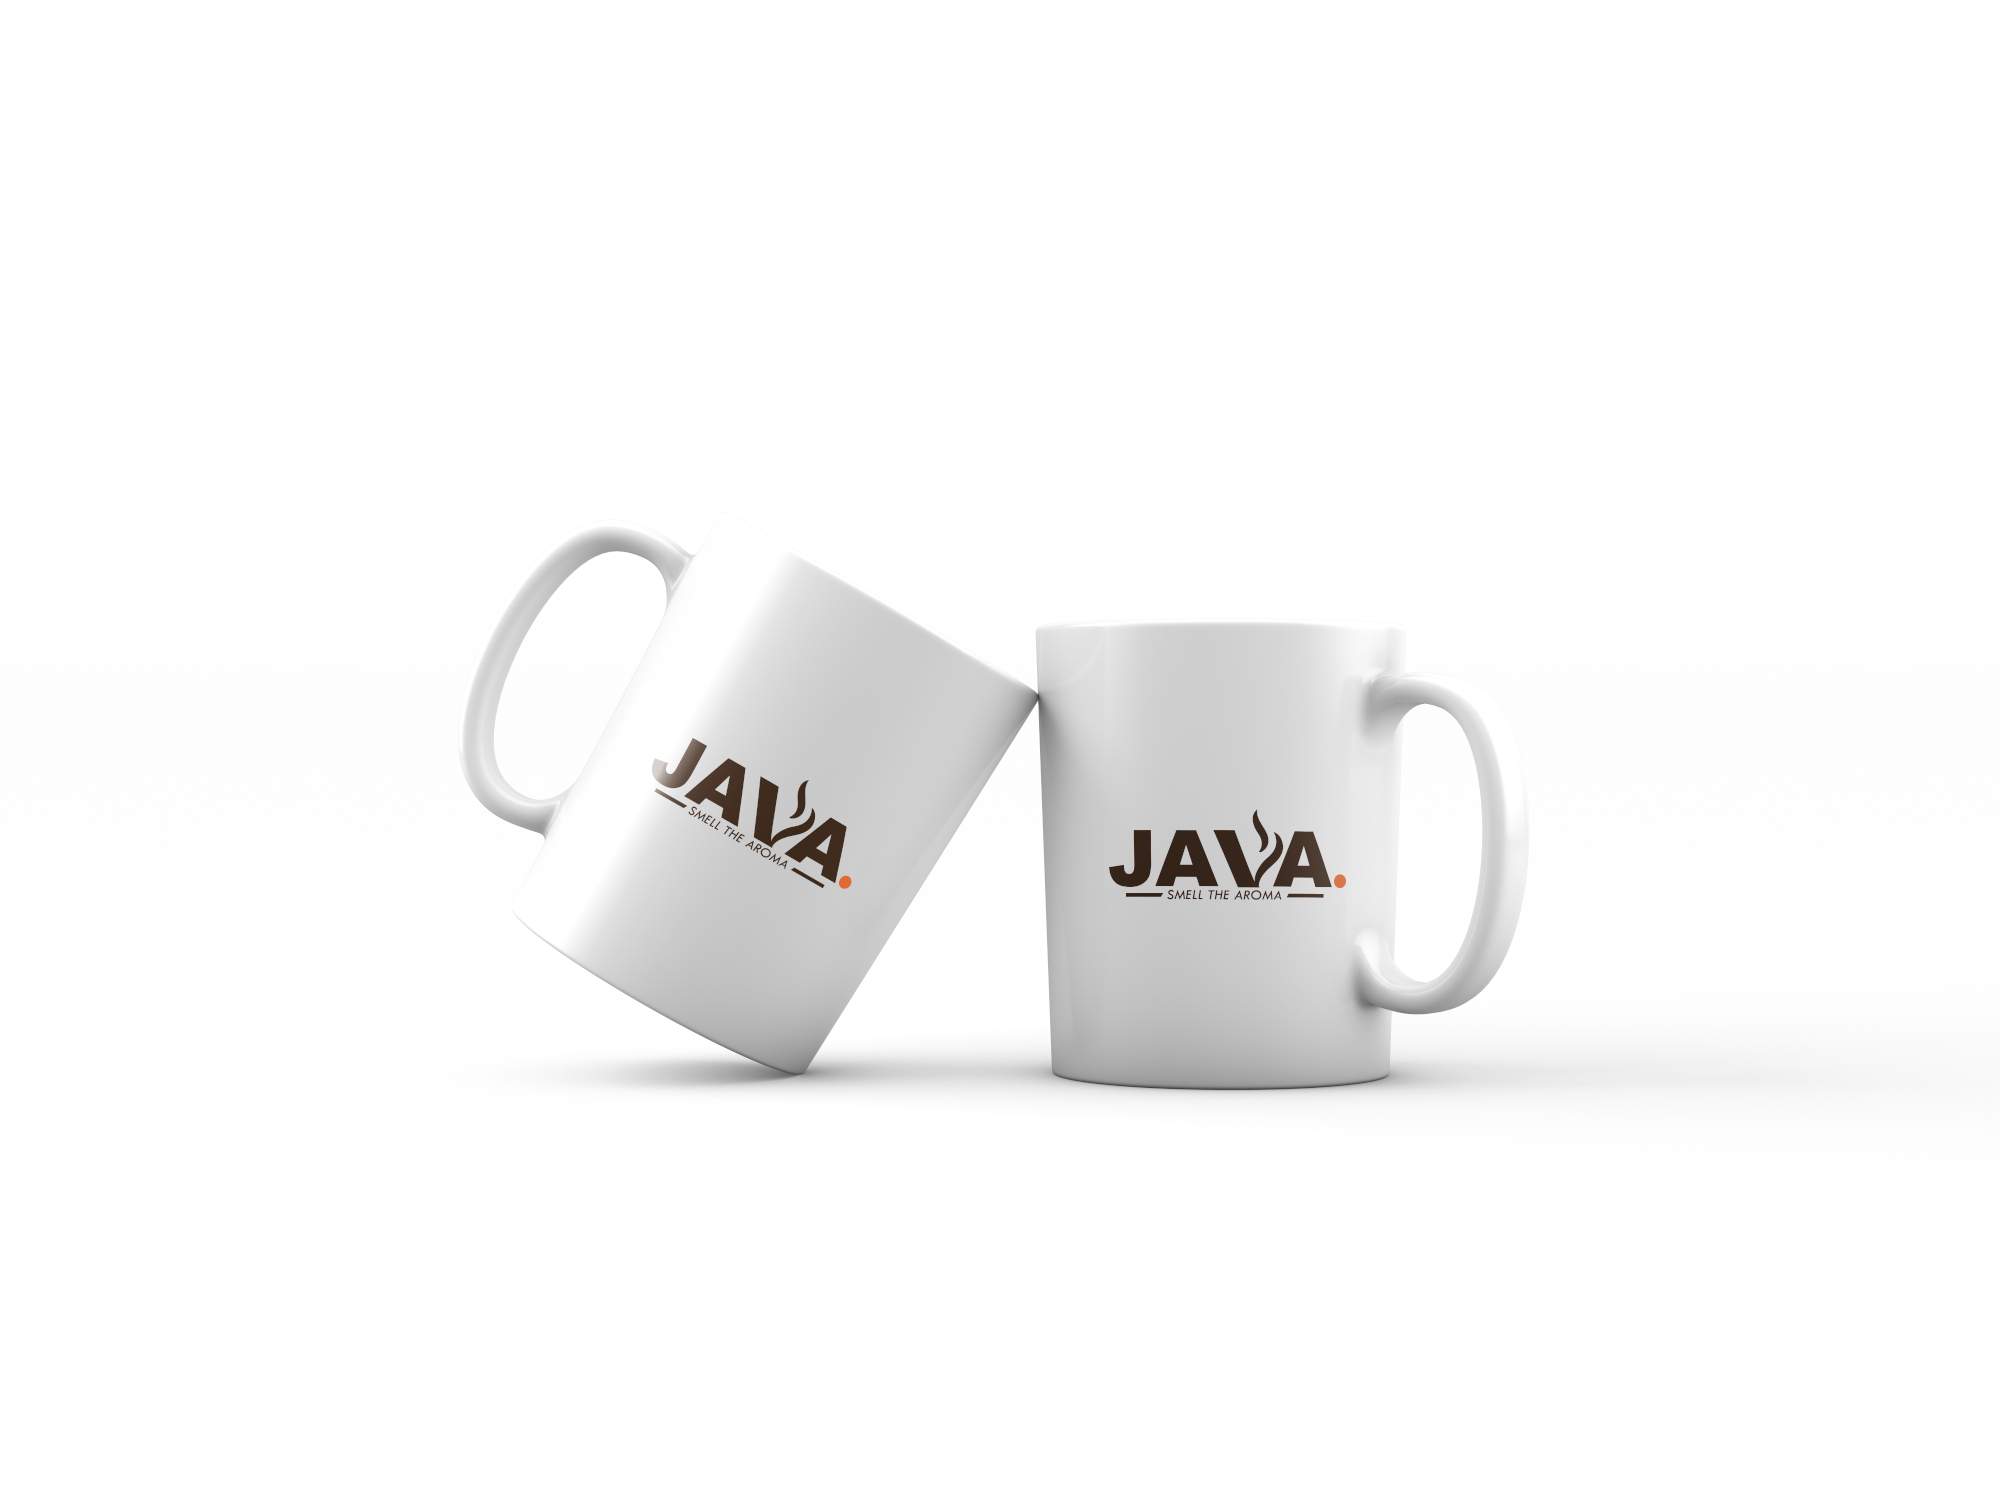 Java branded coffee mugs